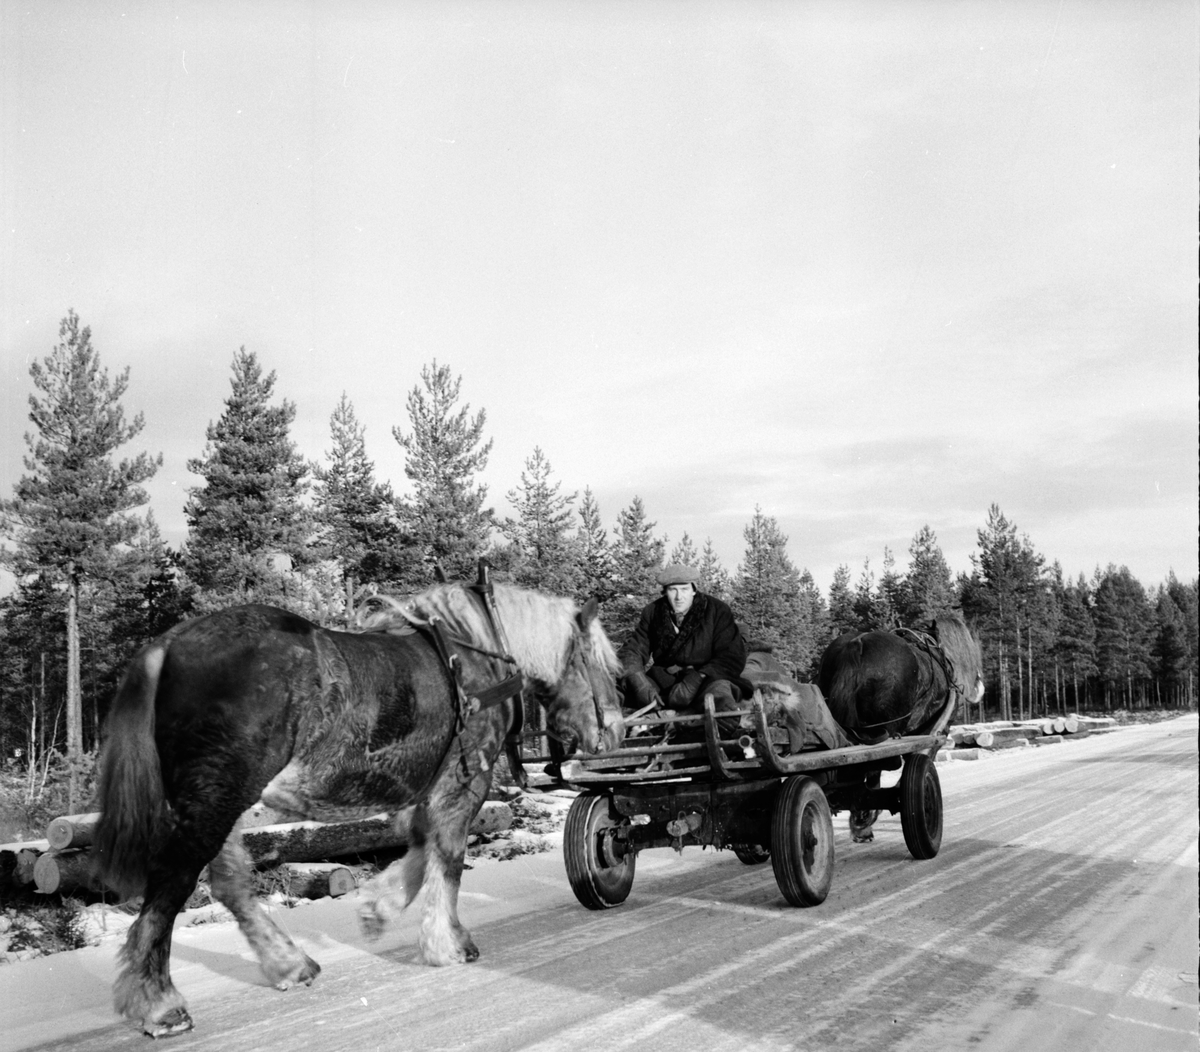 Skolbarn, affären, skogskörare i Skräddarbo.
18/1 1957